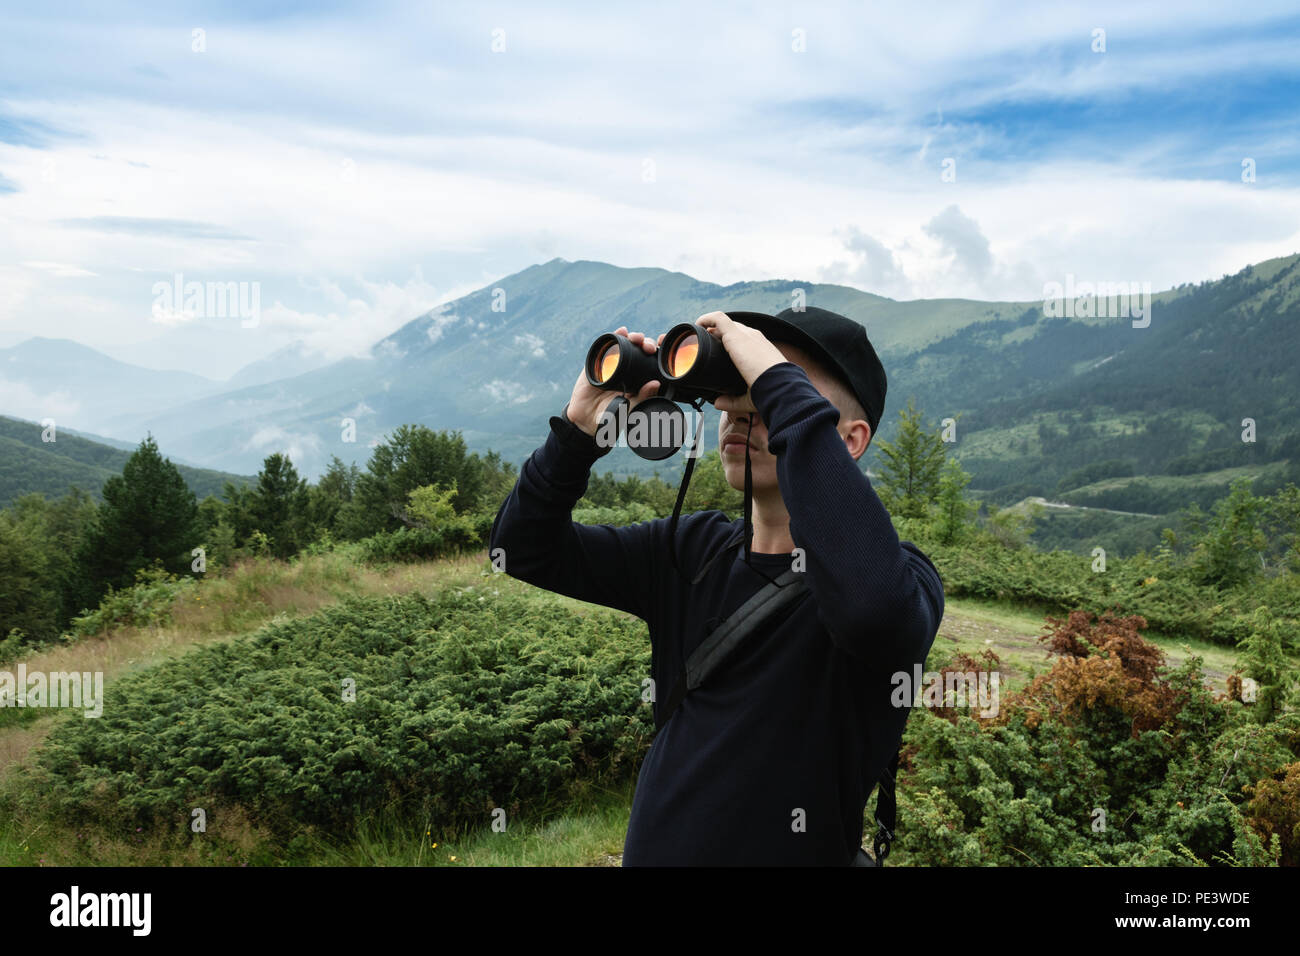 Randonneur regardant à travers des jumelles en face de collines et de montagnes. Prevalla, Prizren, Kosovo Banque D'Images